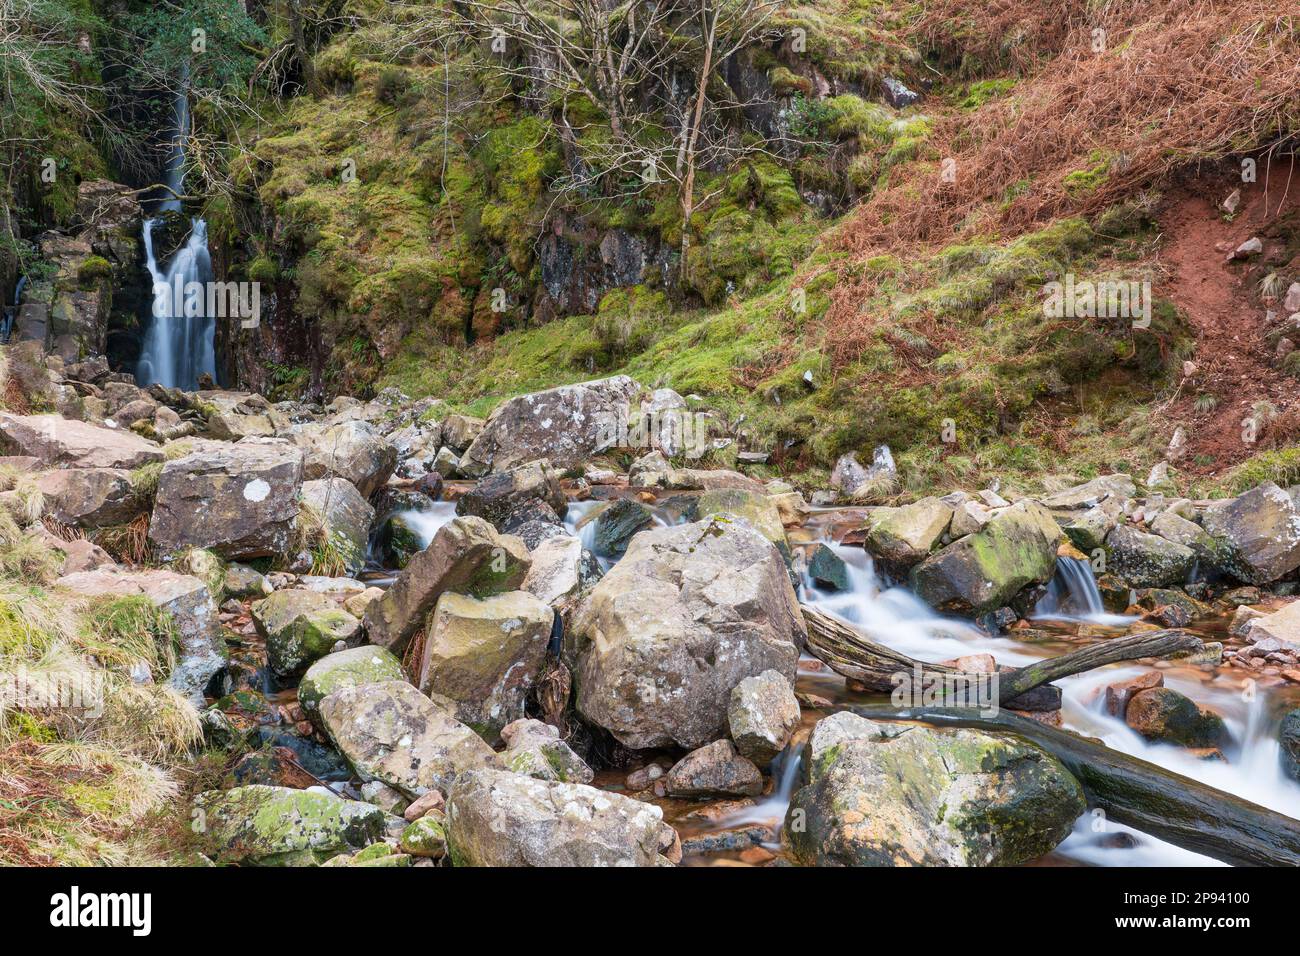 Angleterre, Cumbria, parc national de Lake District. Scale Force près du village de Buttermere dans le parc national du district du lac. Banque D'Images